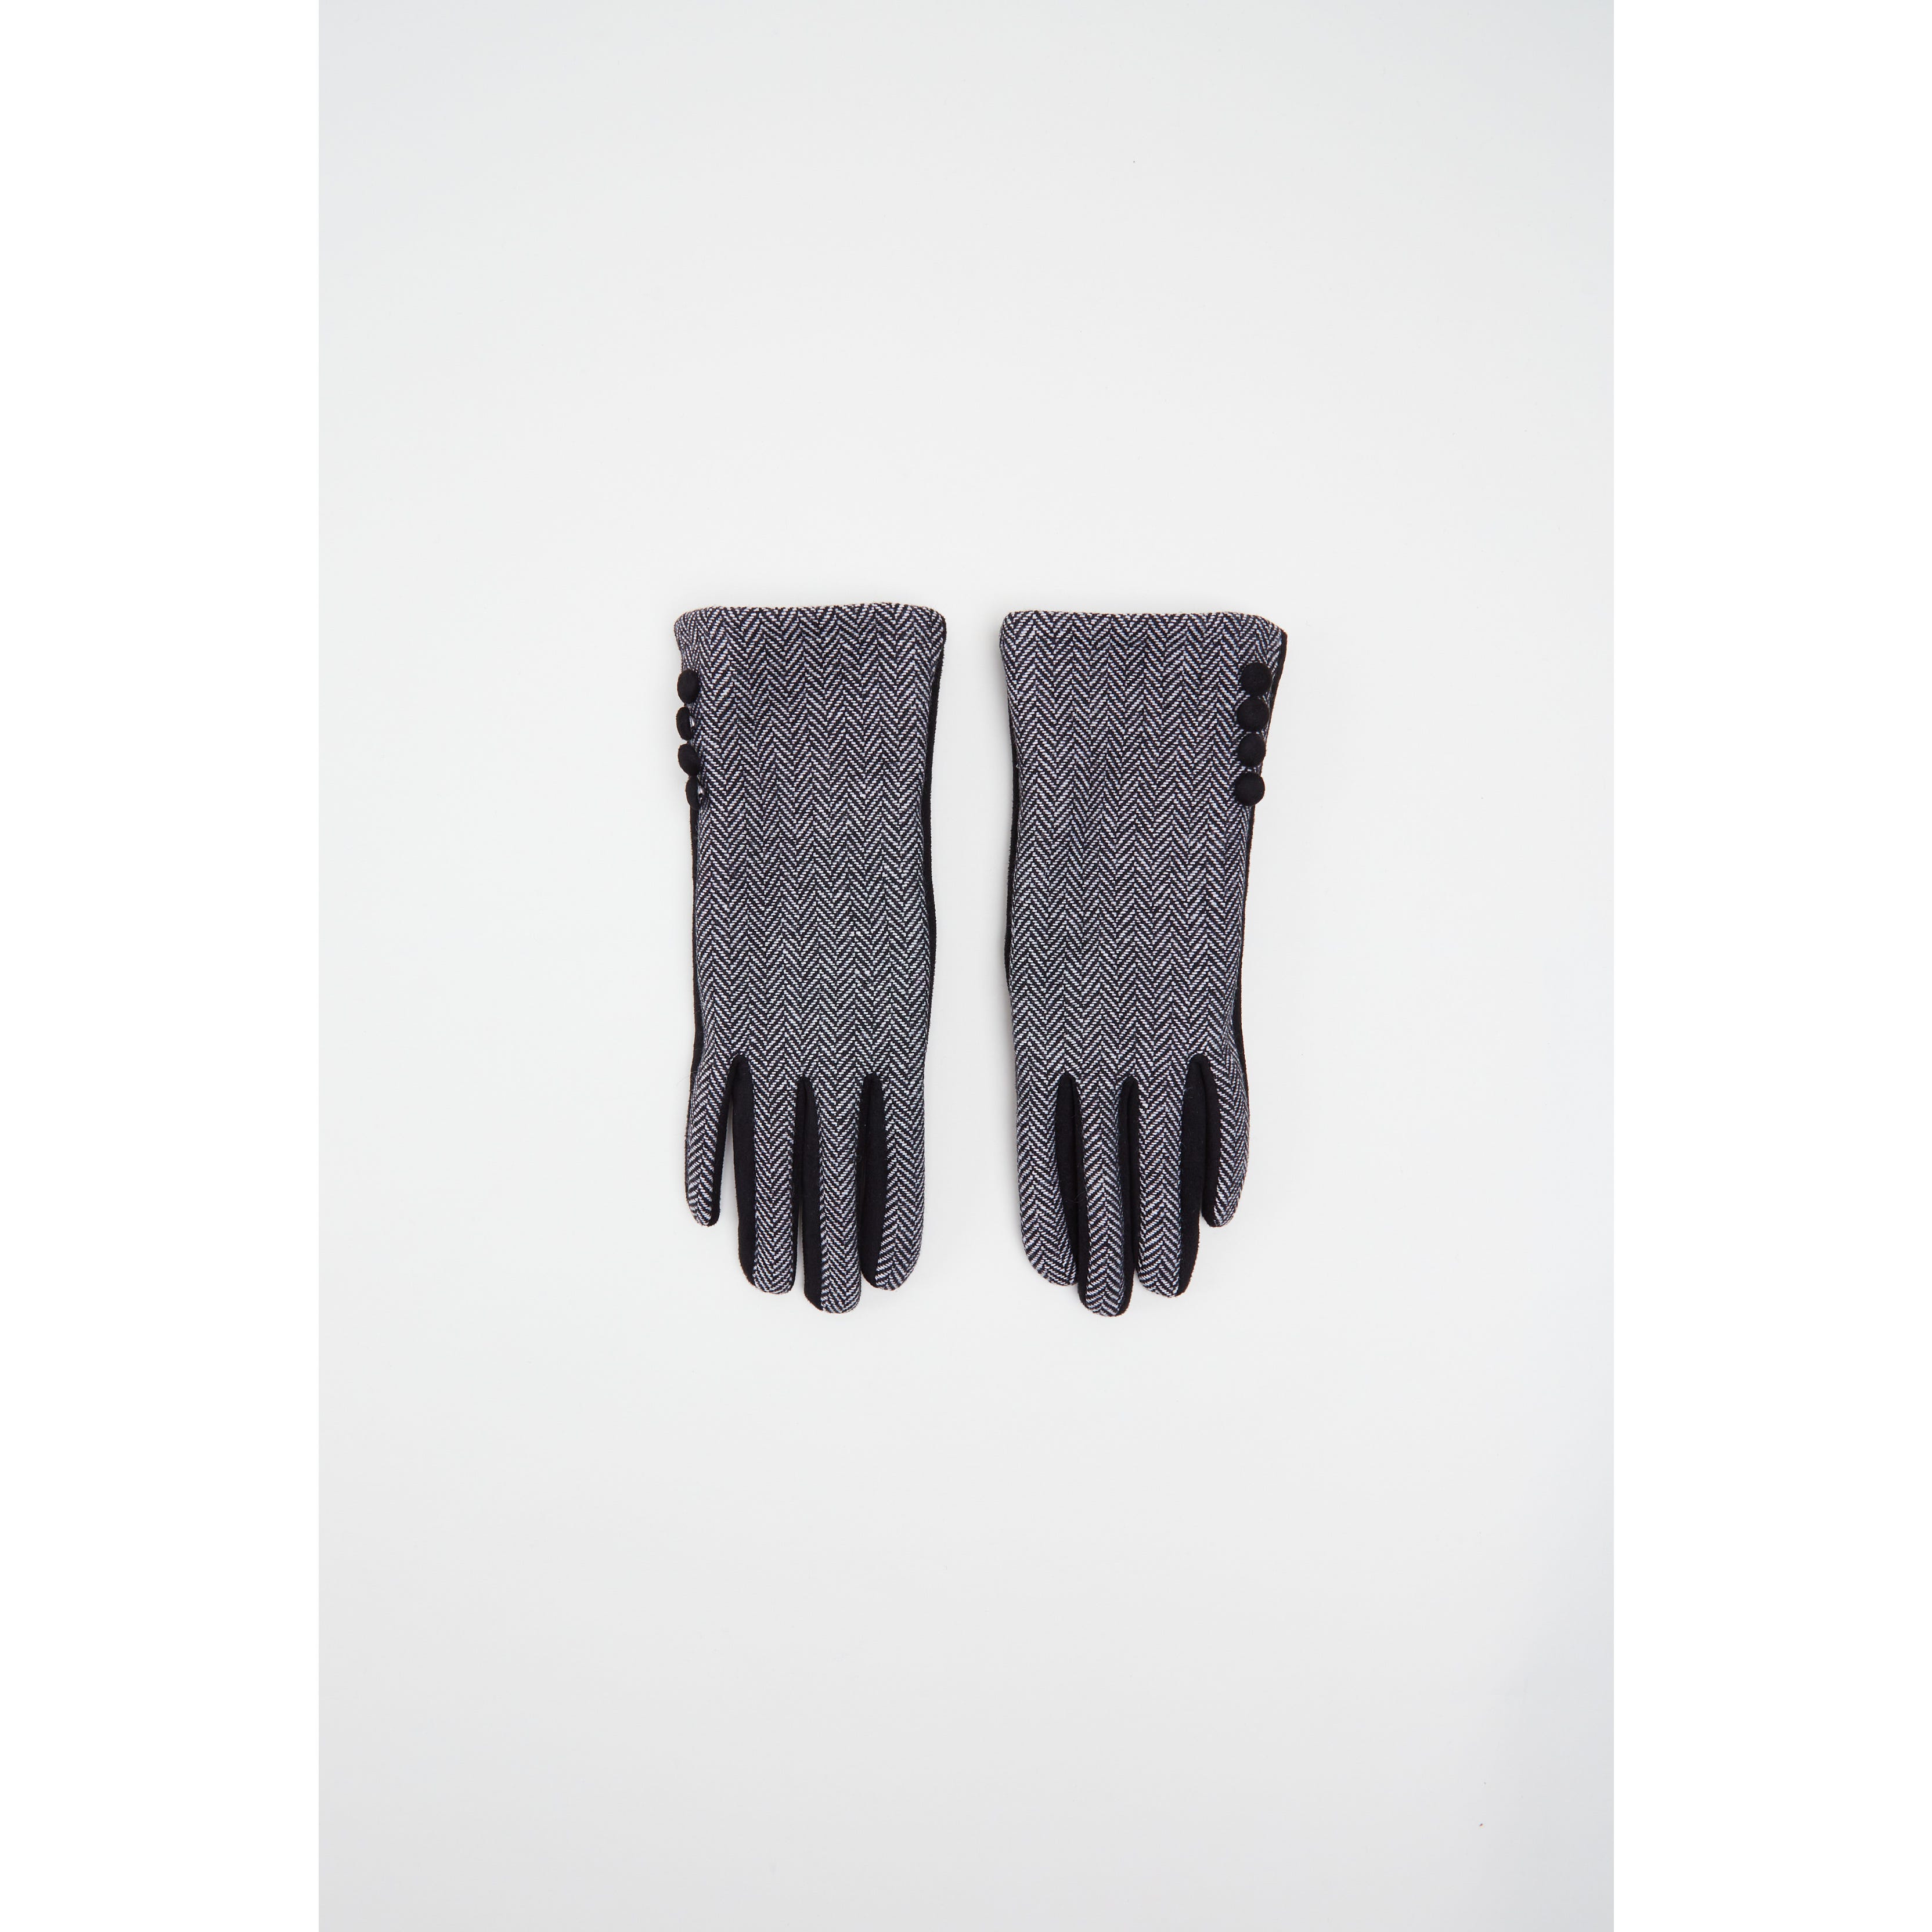 Links 1980's Lederen Vingerloze Handschoen Accessoires Handschoenen & wanten Rijhandschoenen 